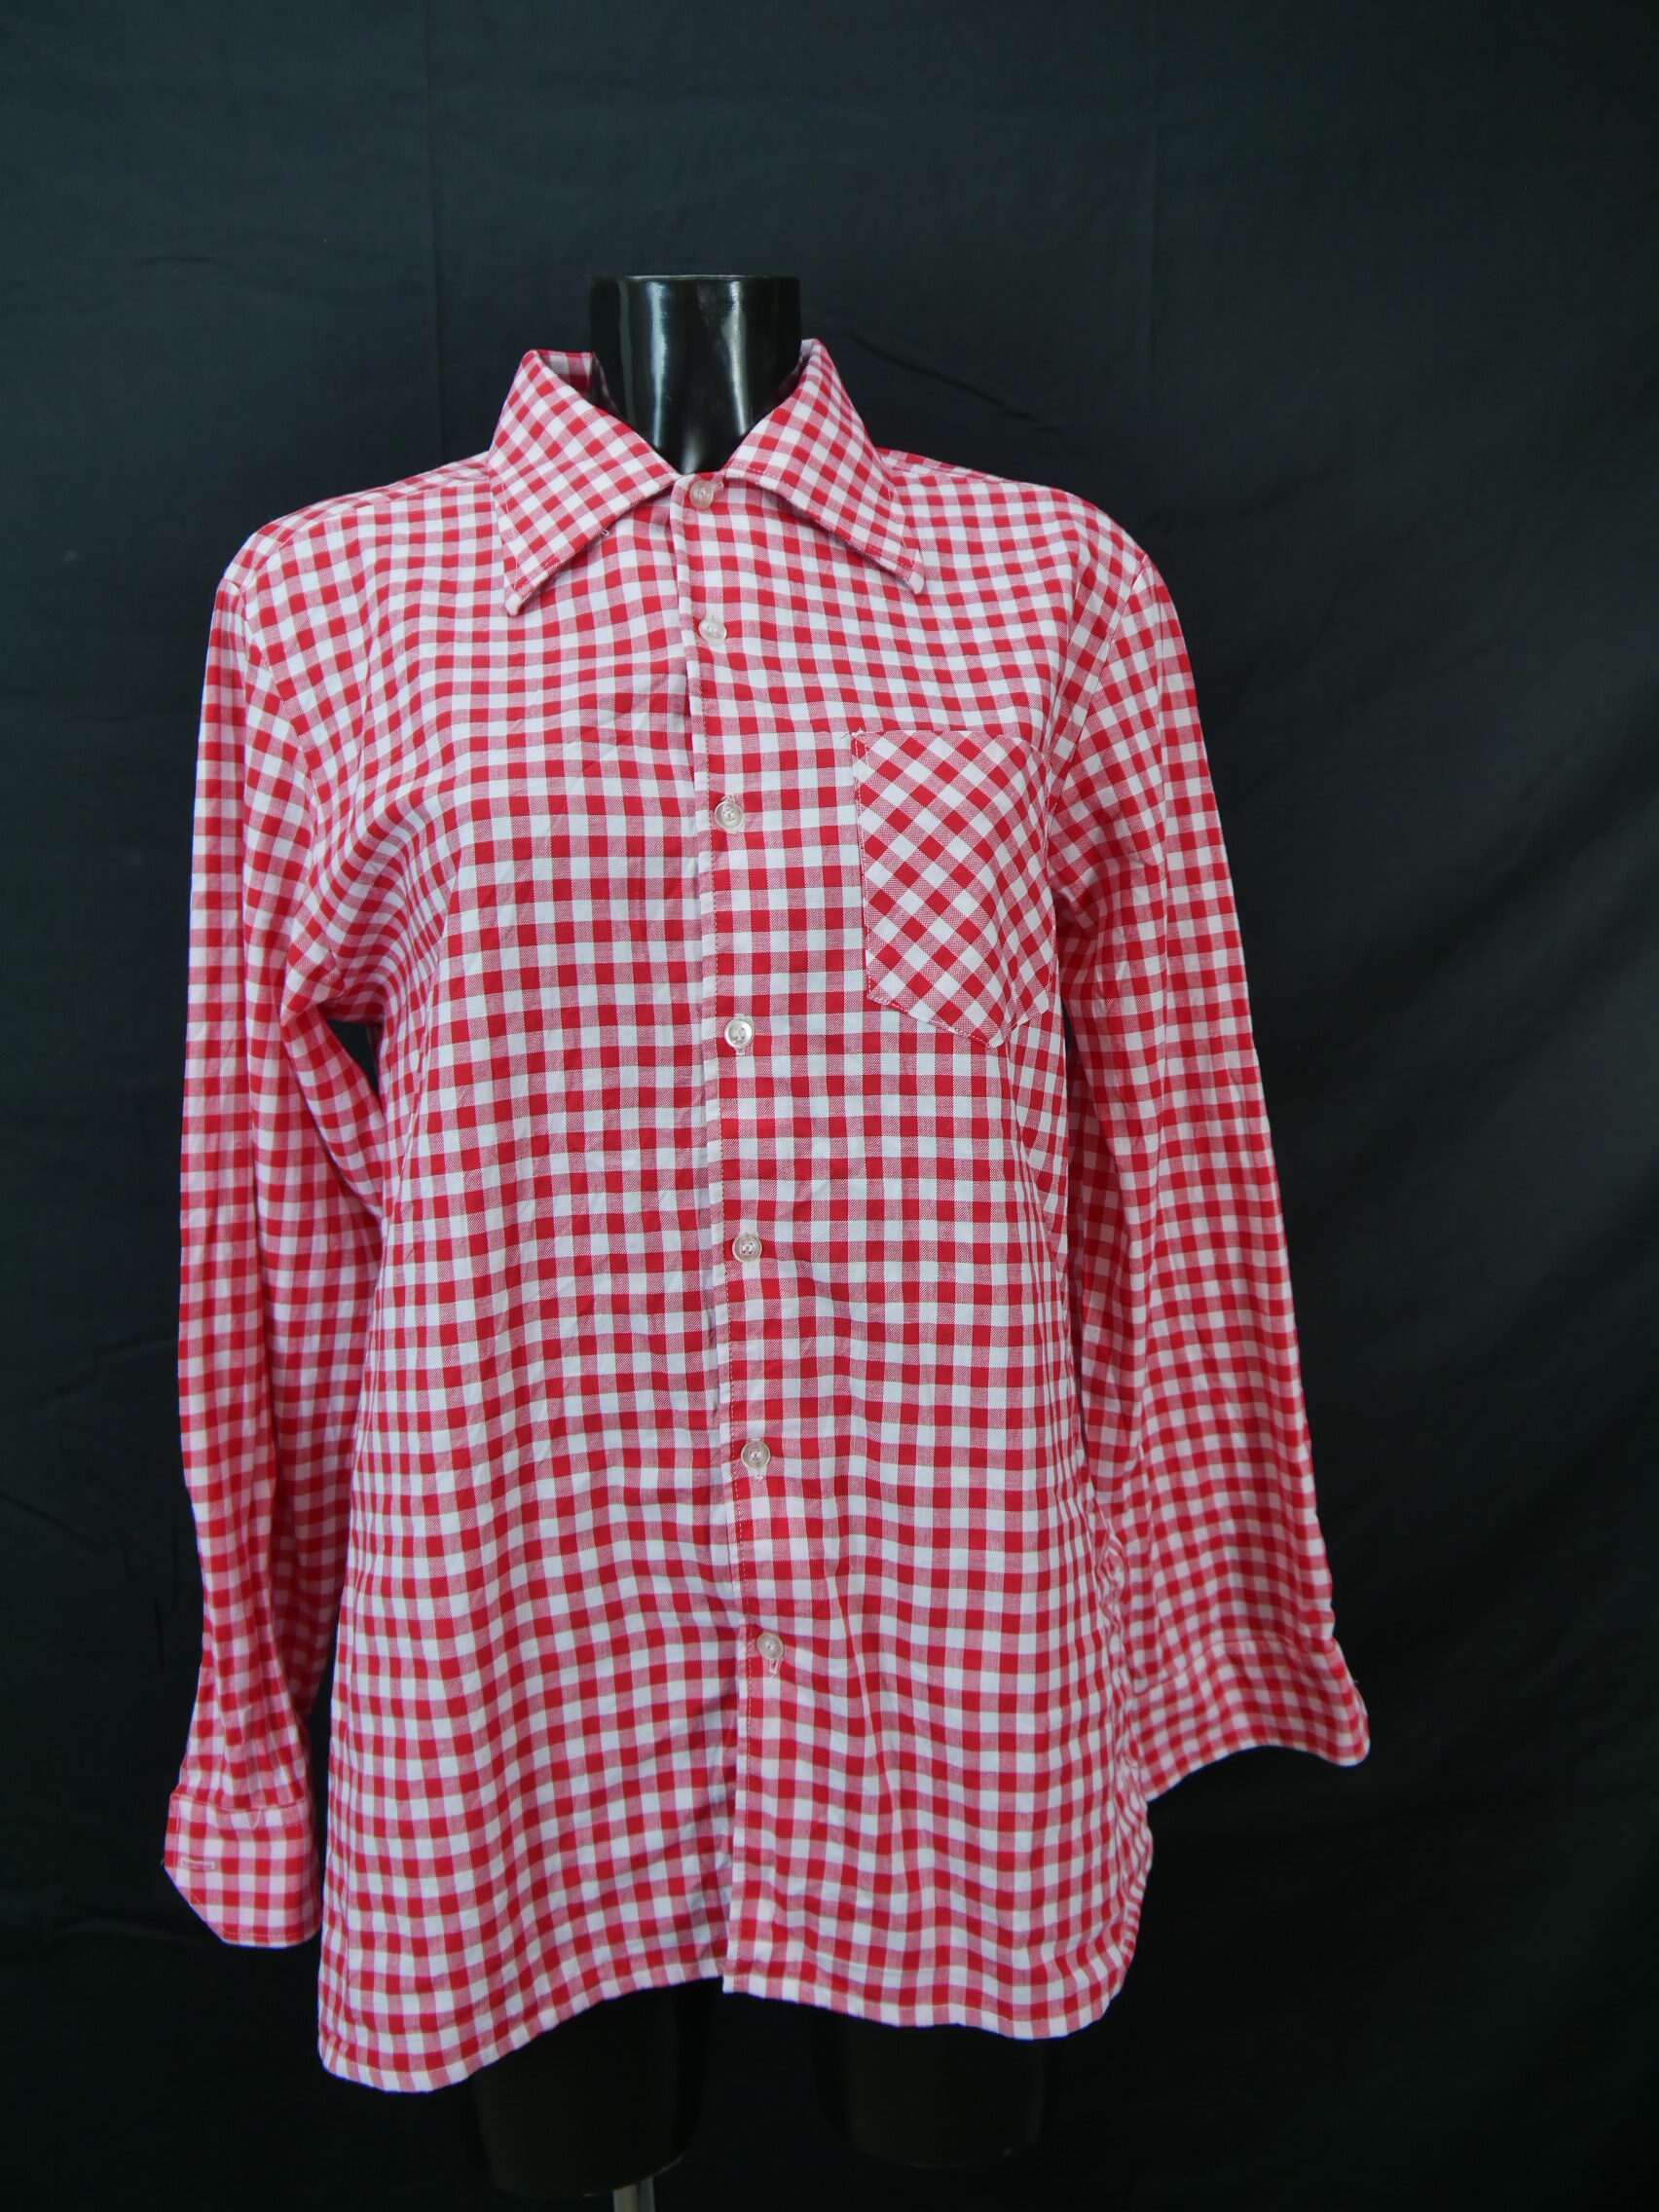 Gr.50 Trachtenbluse rot/weiß Bluse für Dirndl Seidensticker Baumwolle TB8840